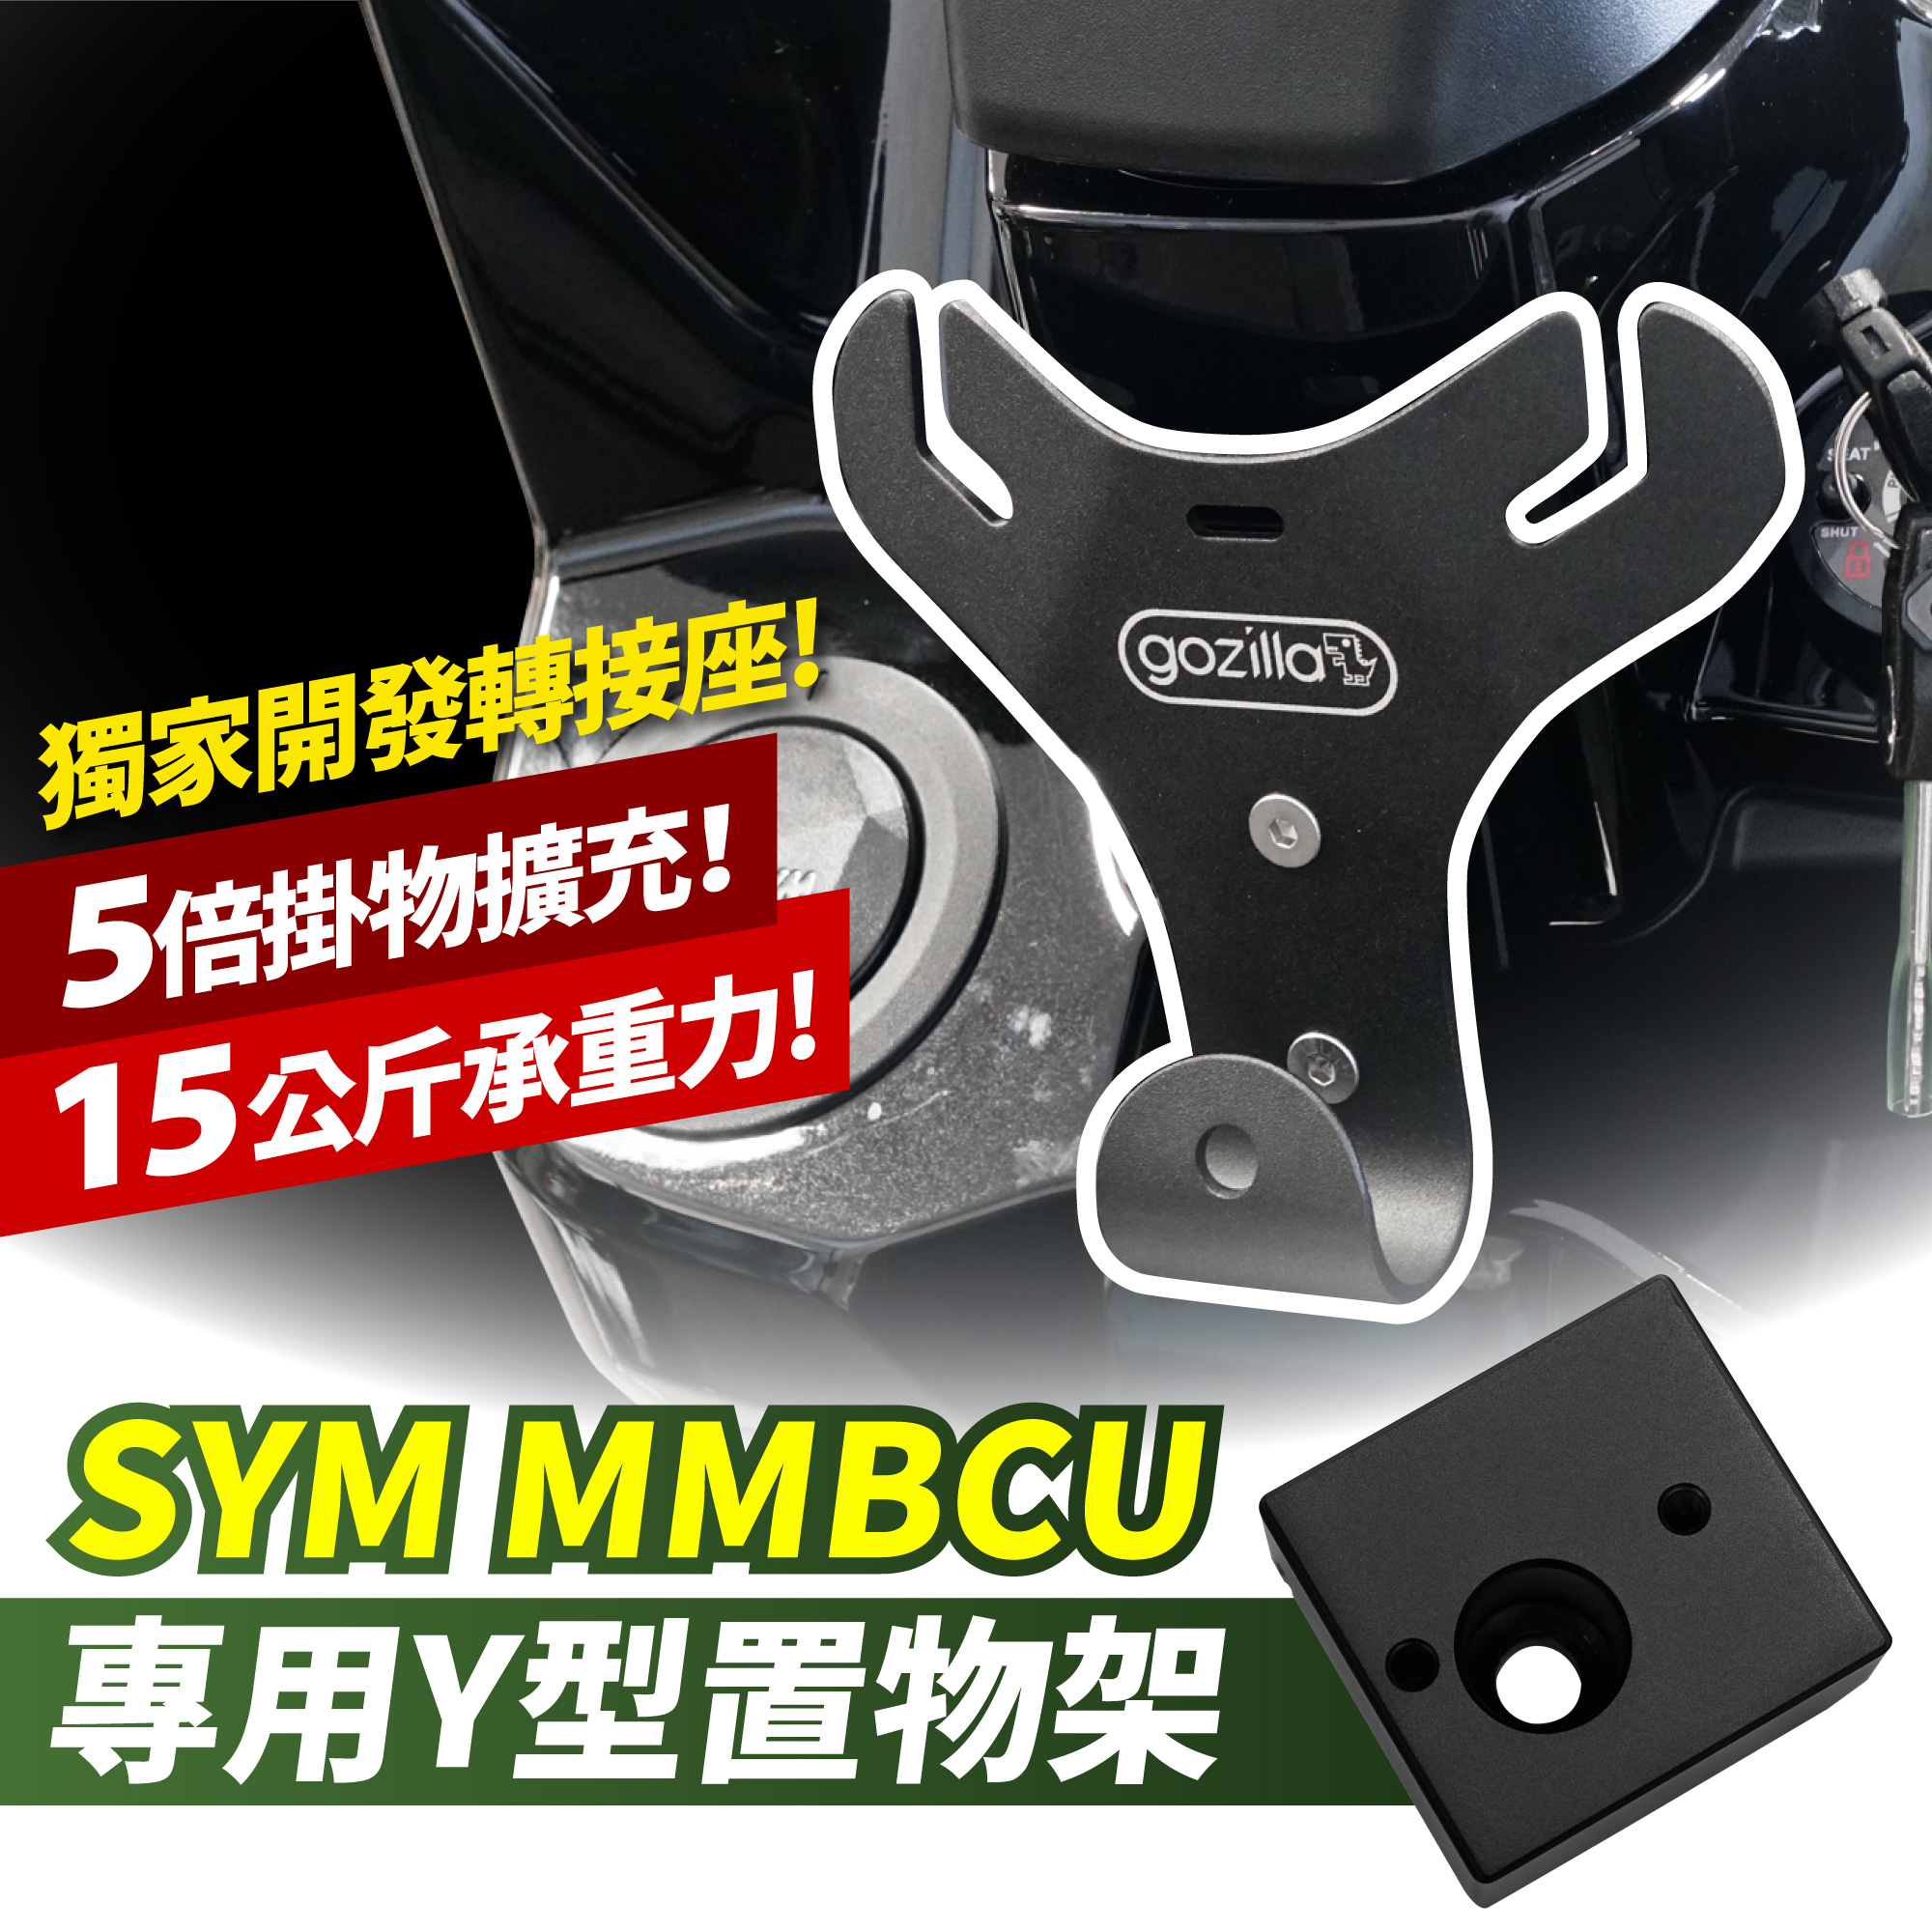 台湾摩托车改装品牌